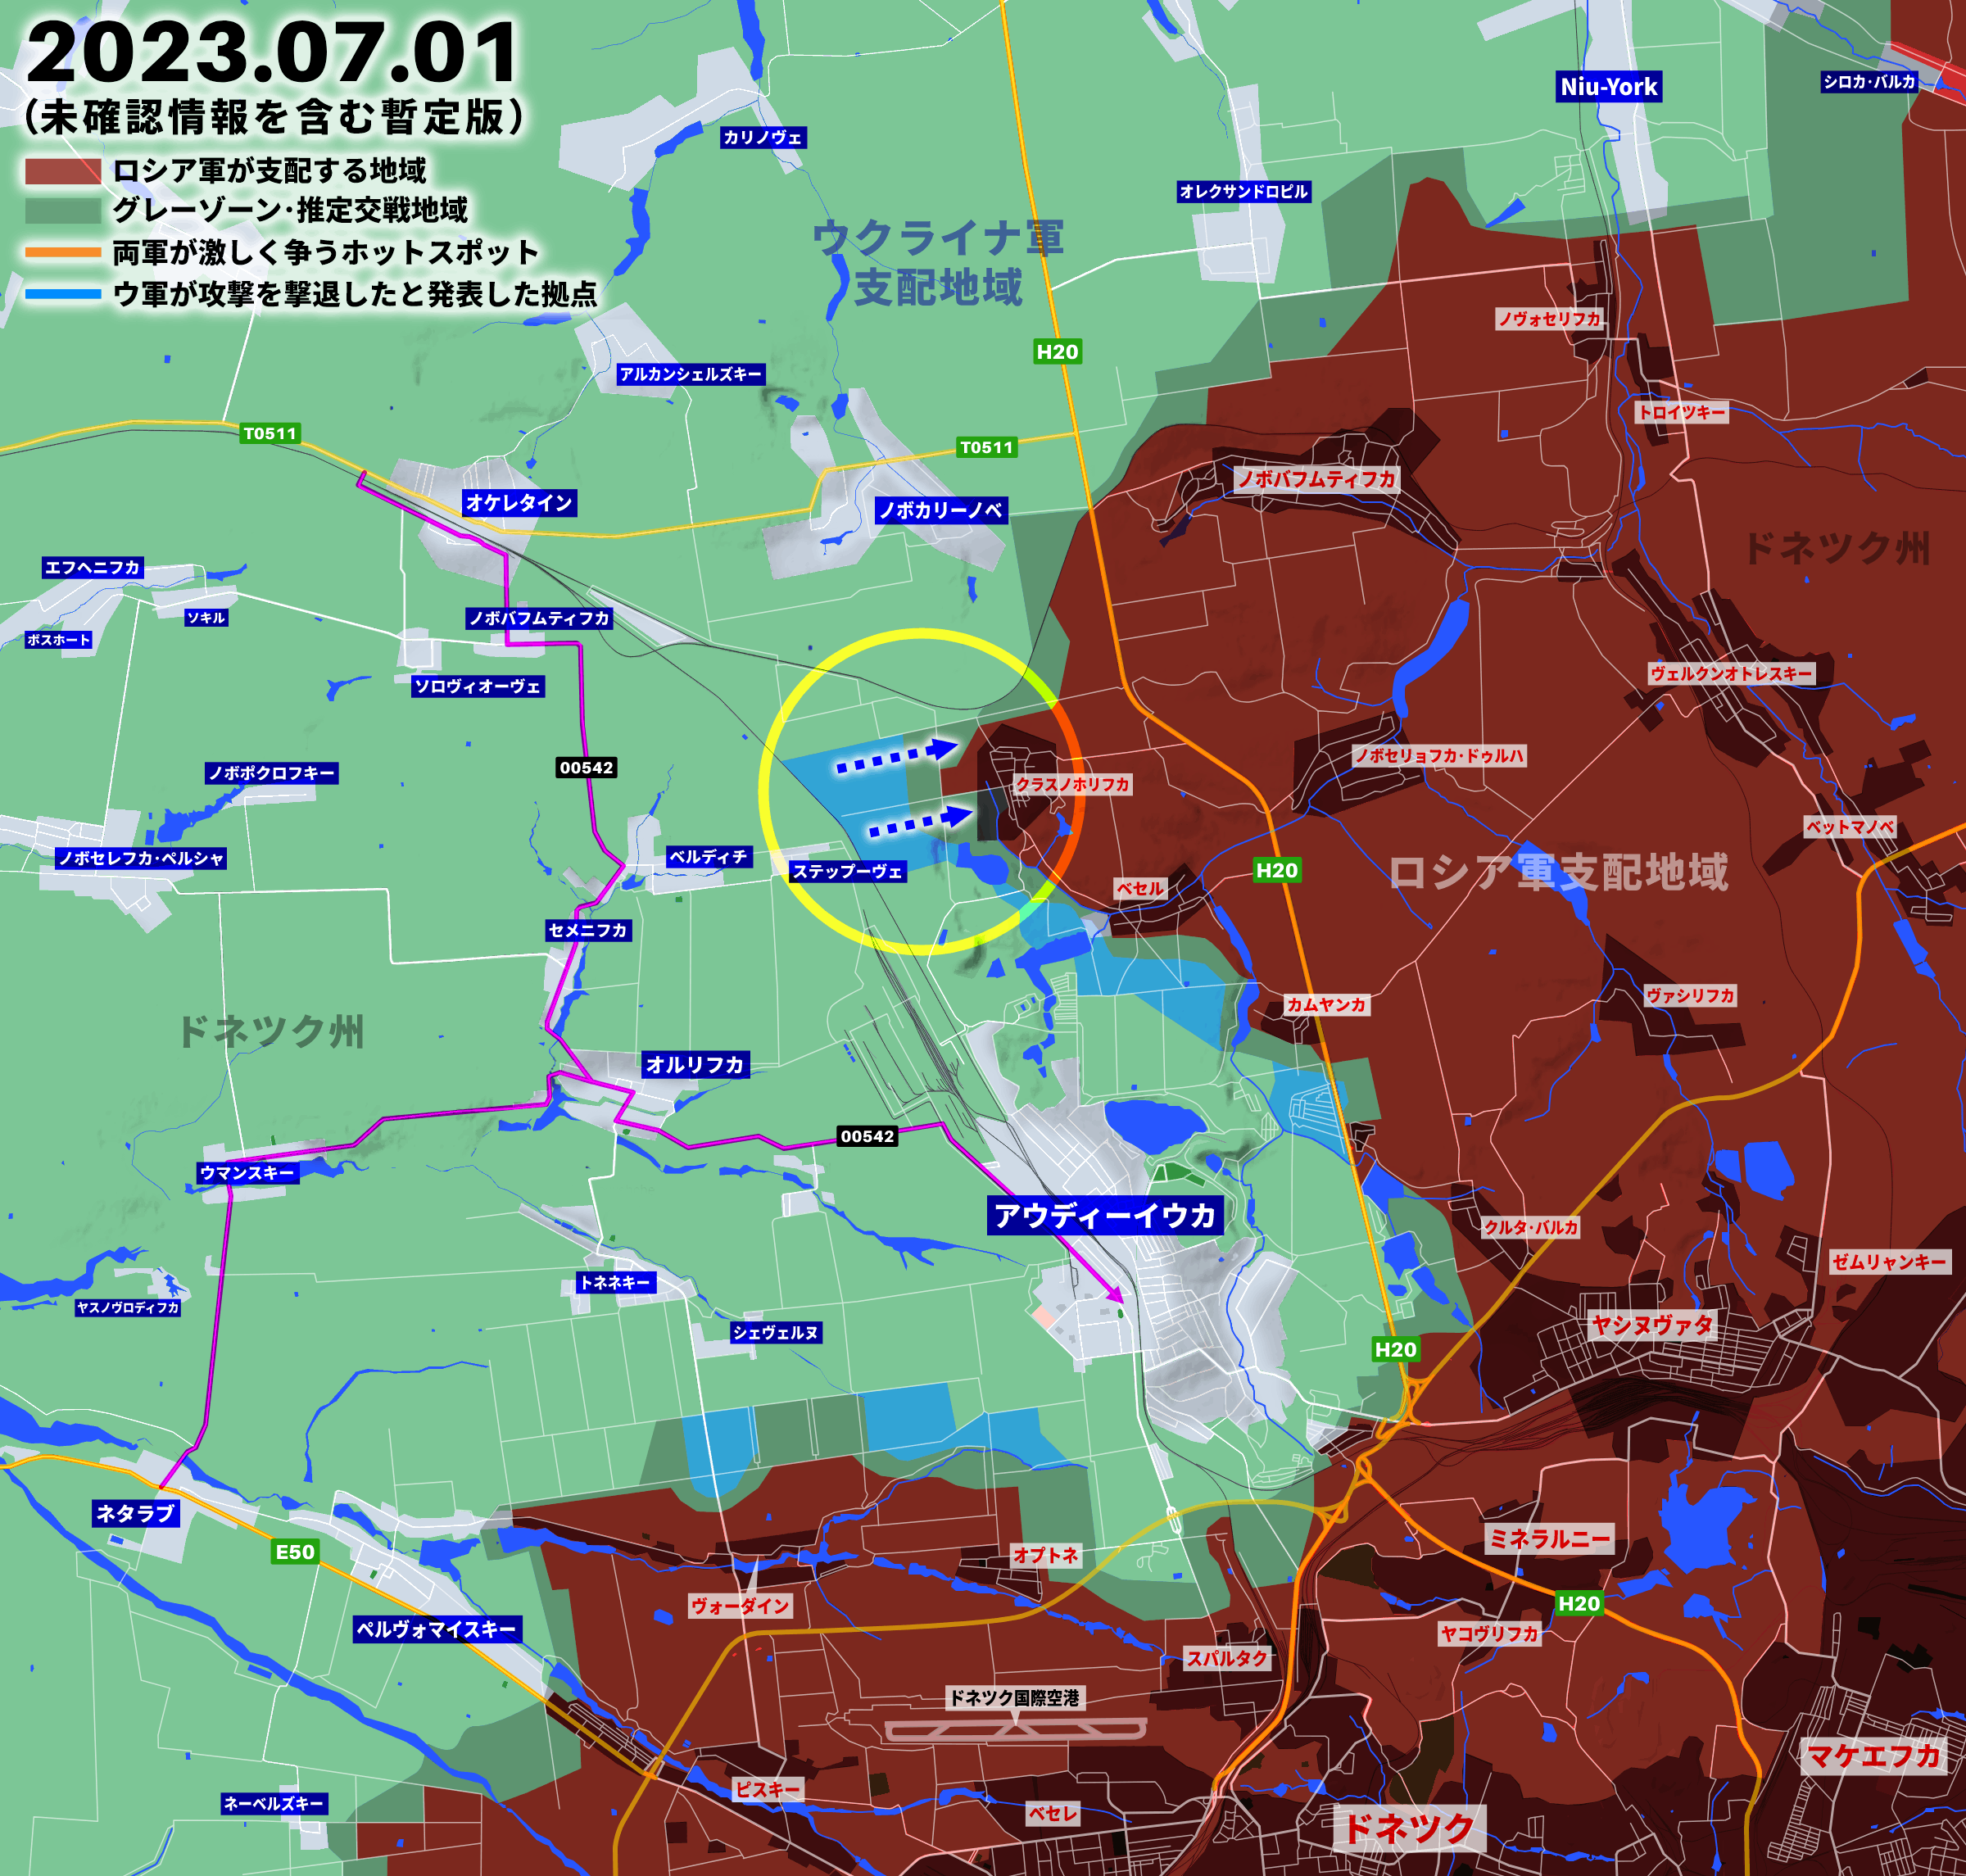 侵攻492日目、バフムート、アウディーイウカ、ザポリージャでウクライナ軍が前進